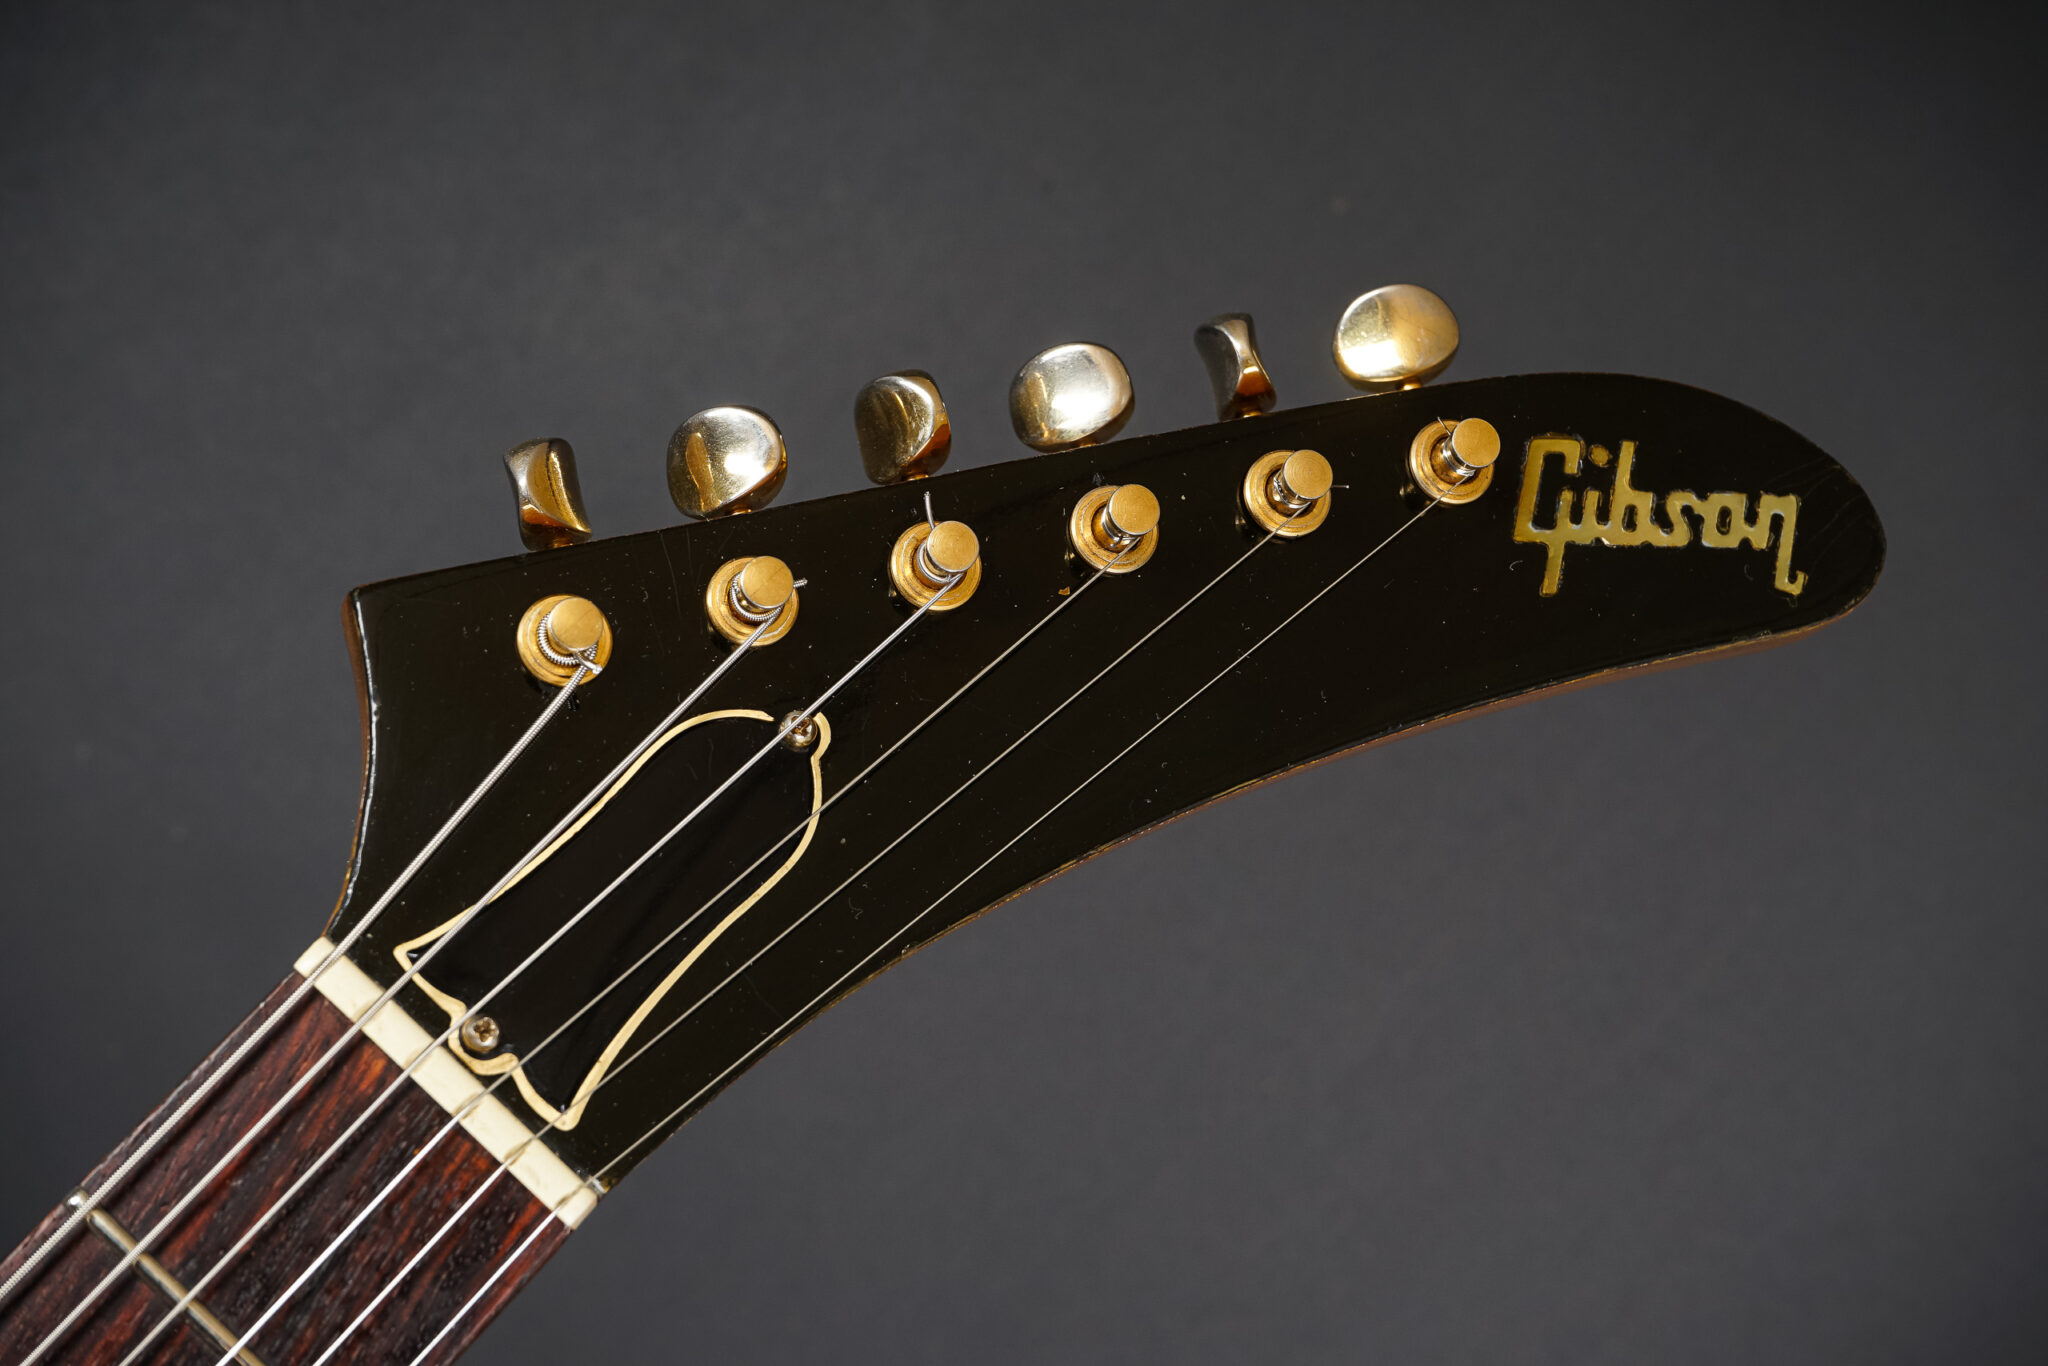 1977-Gibson-Explorer-Natural-06247072-3-2048x1366.jpg